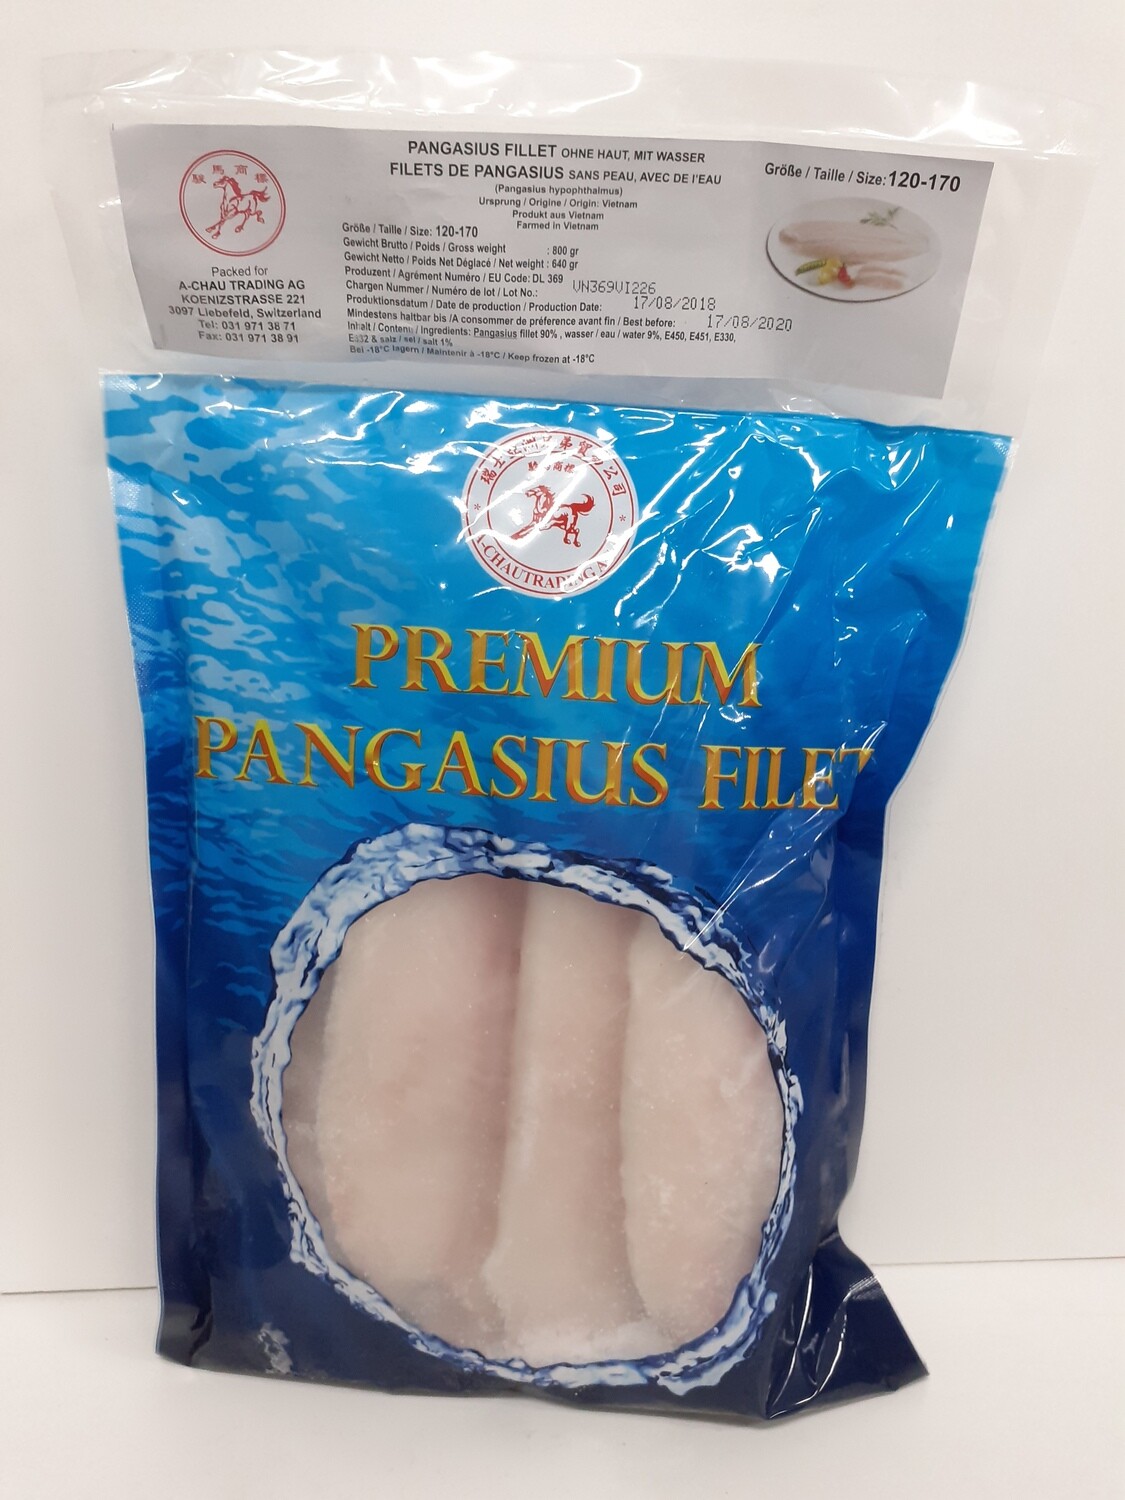 Pangasius Filet A-CHAUTRAPINGA 640 g